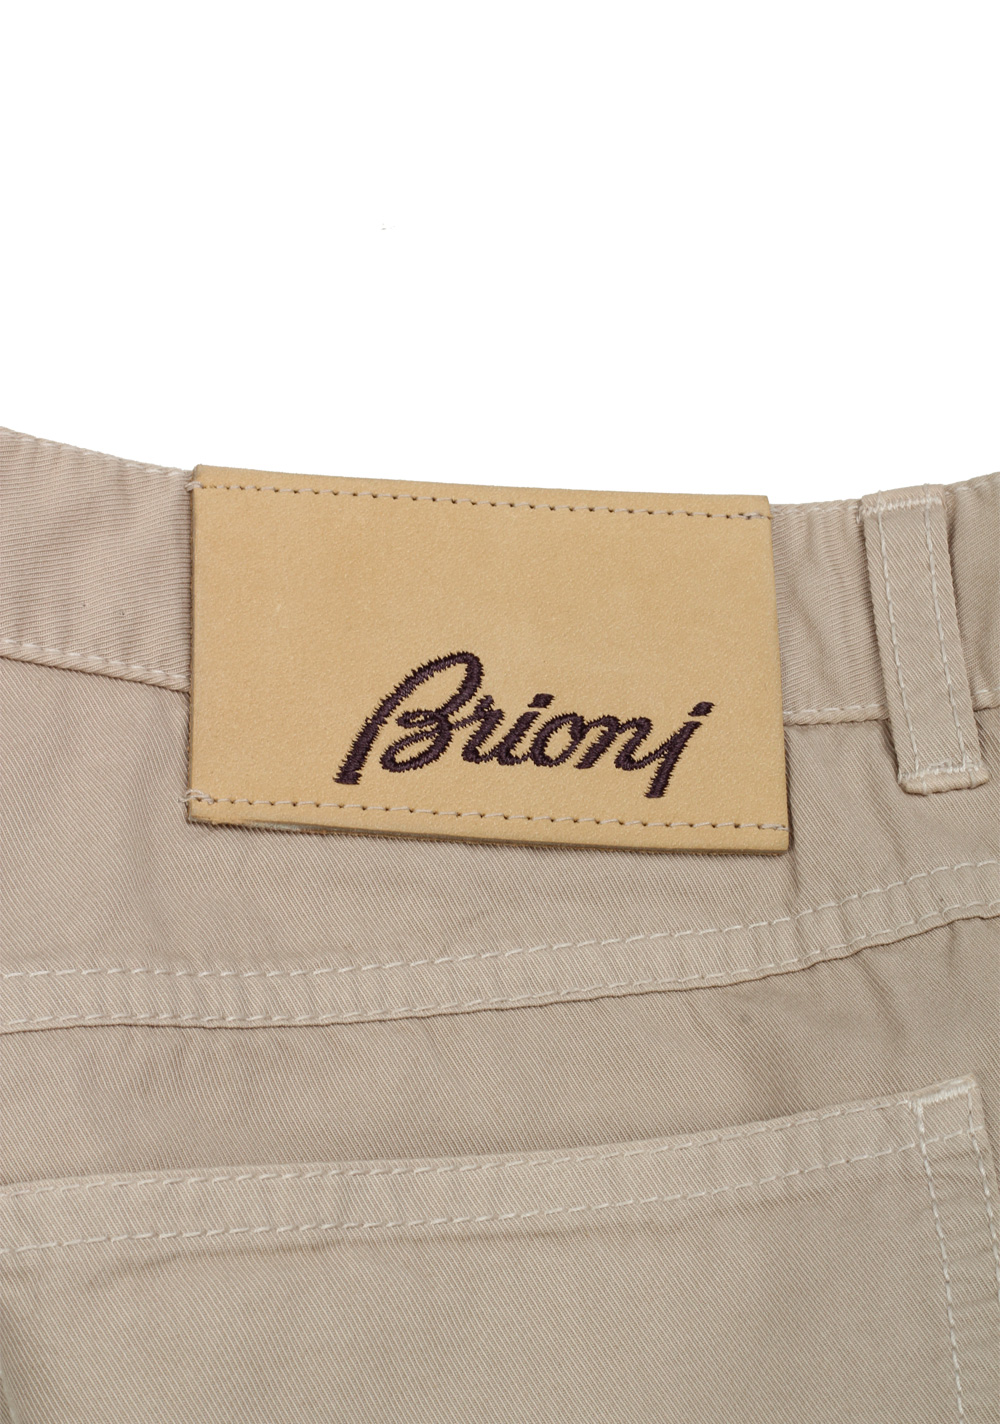 Brioni Beige Jeans Trousers Size 46 / 30 U.S. | Costume Limité